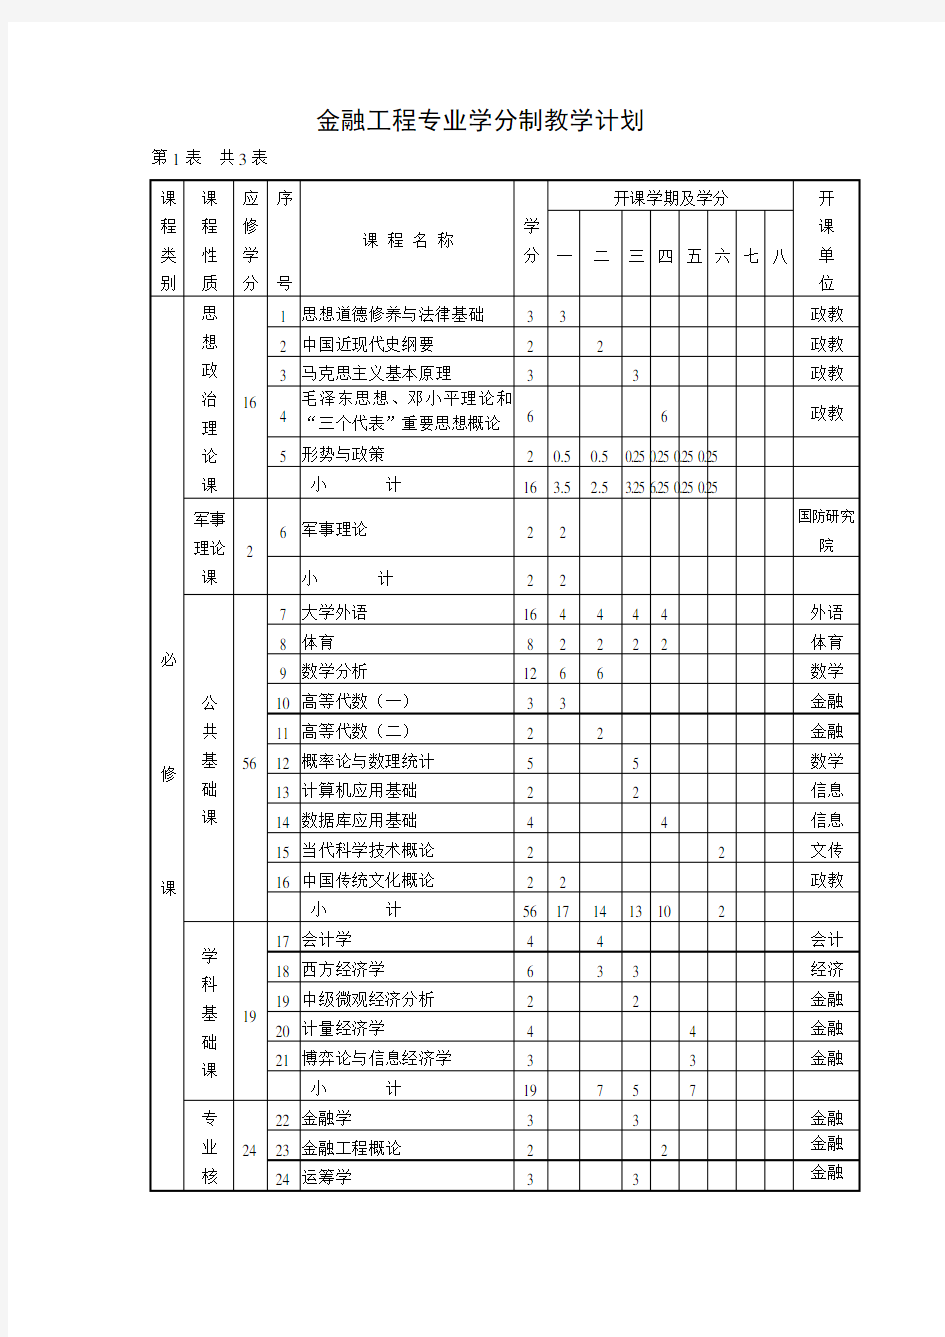 中央财经大学金融工程专业(本科)课程列表